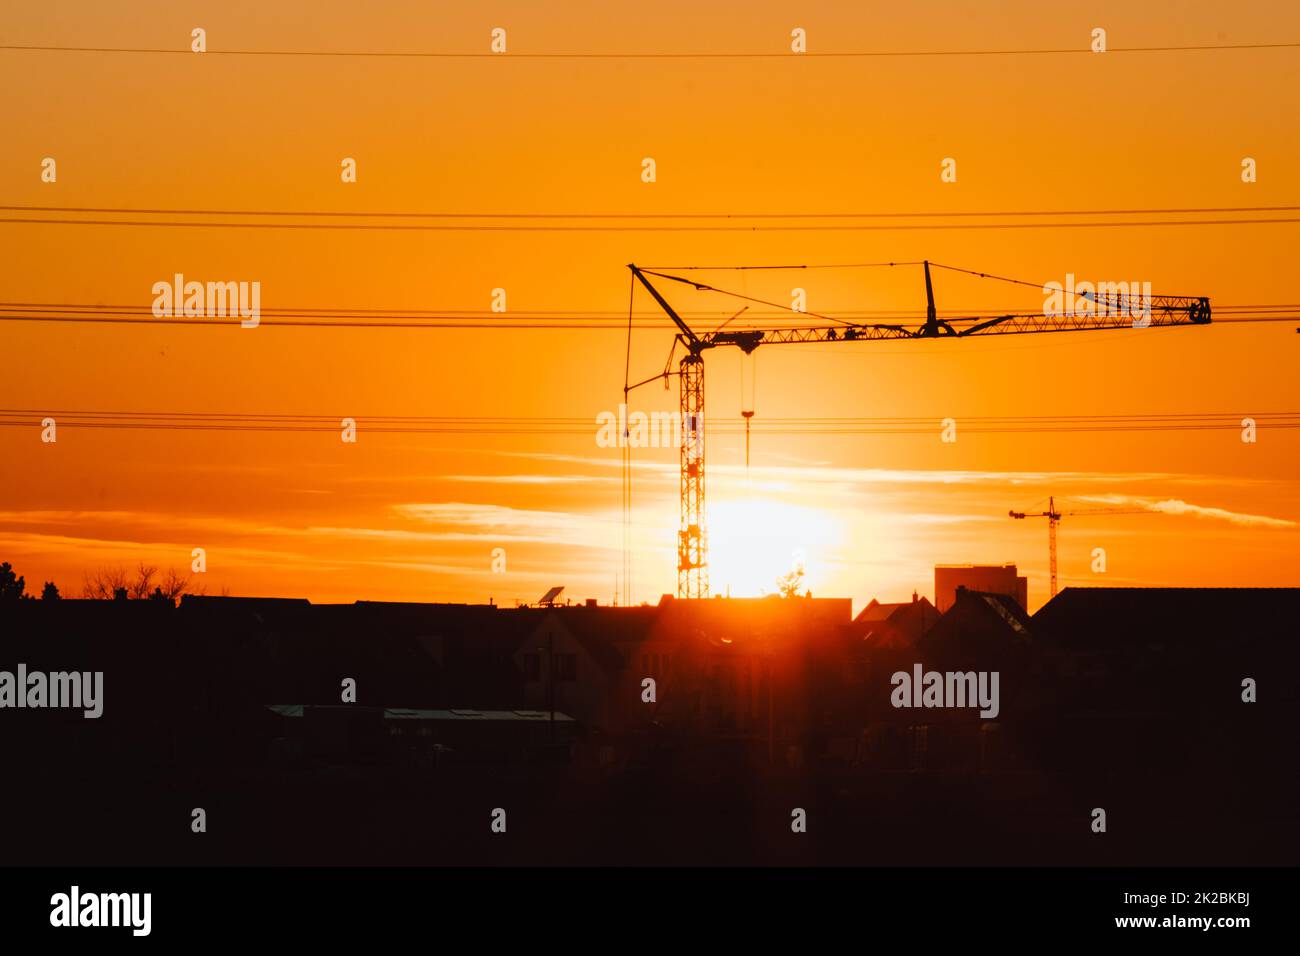 La silhouette di gru da costruzione alta in cielo arancione tramonto mostra il sito di costruzione con l'ingegneria per gli edifici moderni e lo sviluppo della città come lavoro di squadra architettonico per le linee ad alta tensione grattacieli Foto Stock